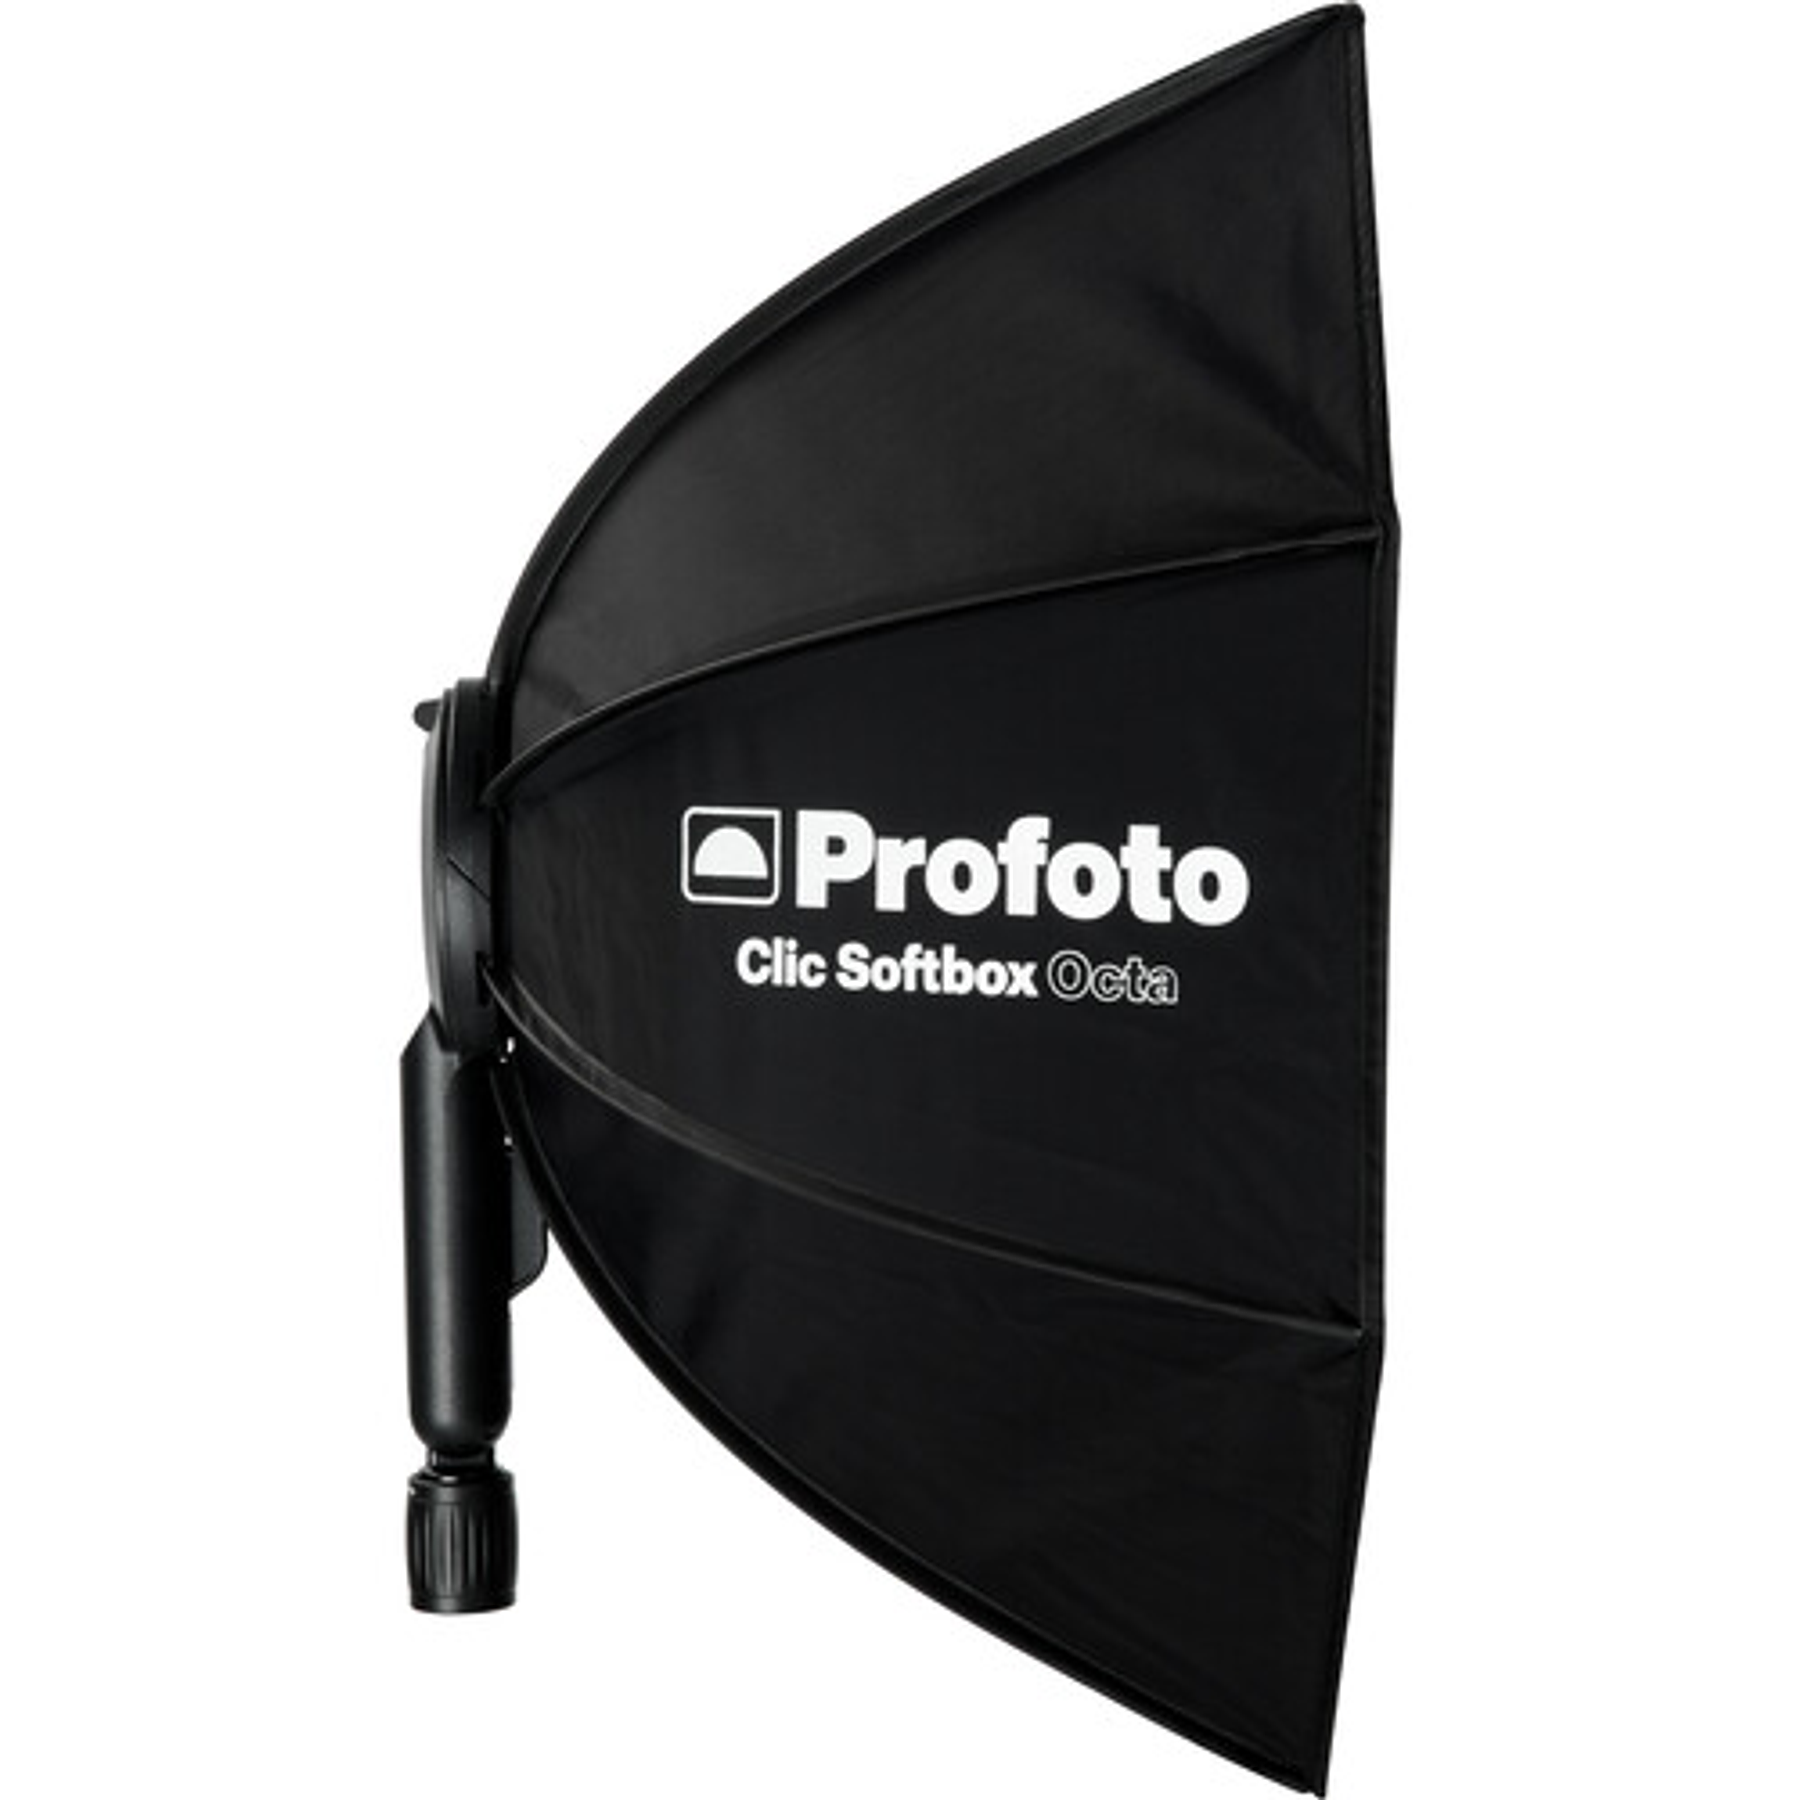 Profoto Clic Softbox Octa (60cm)